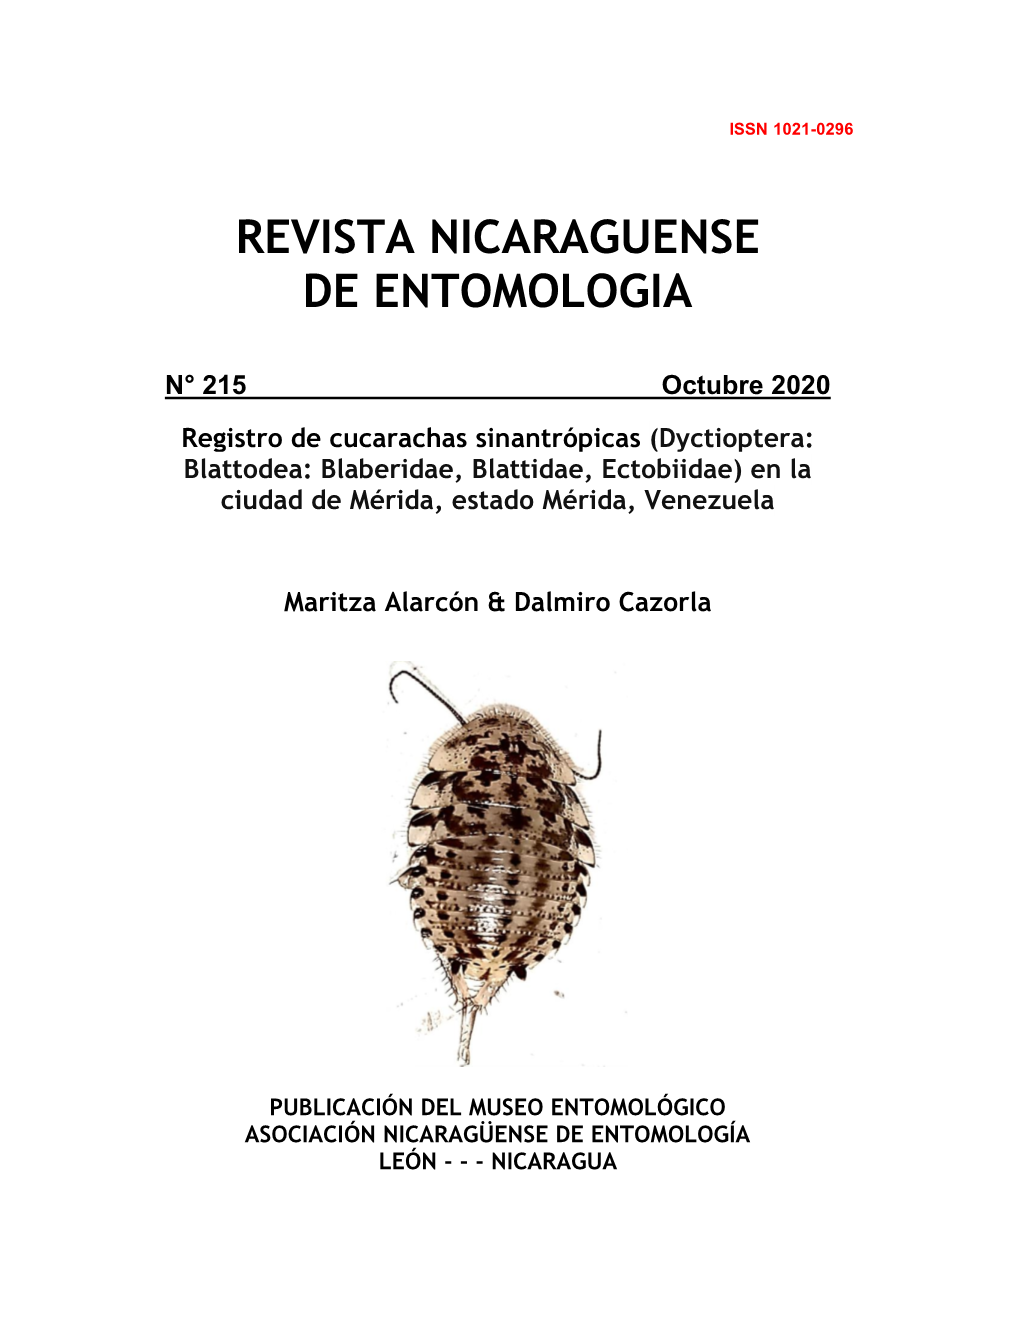 Registro De Cucarachas Sinantropicas